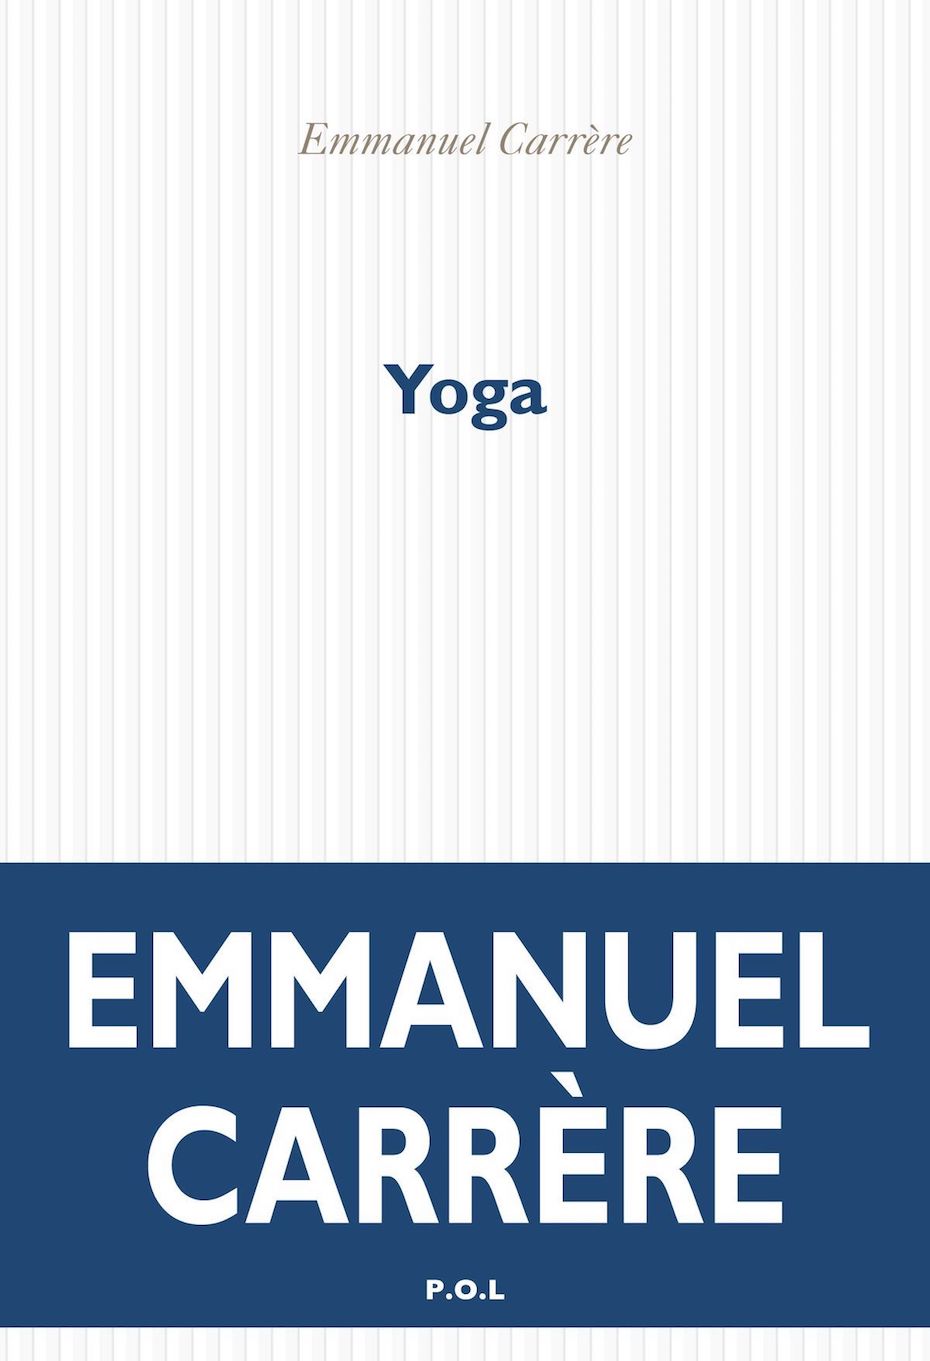 Emmanuel Carrère, Yoga (P.O.L)